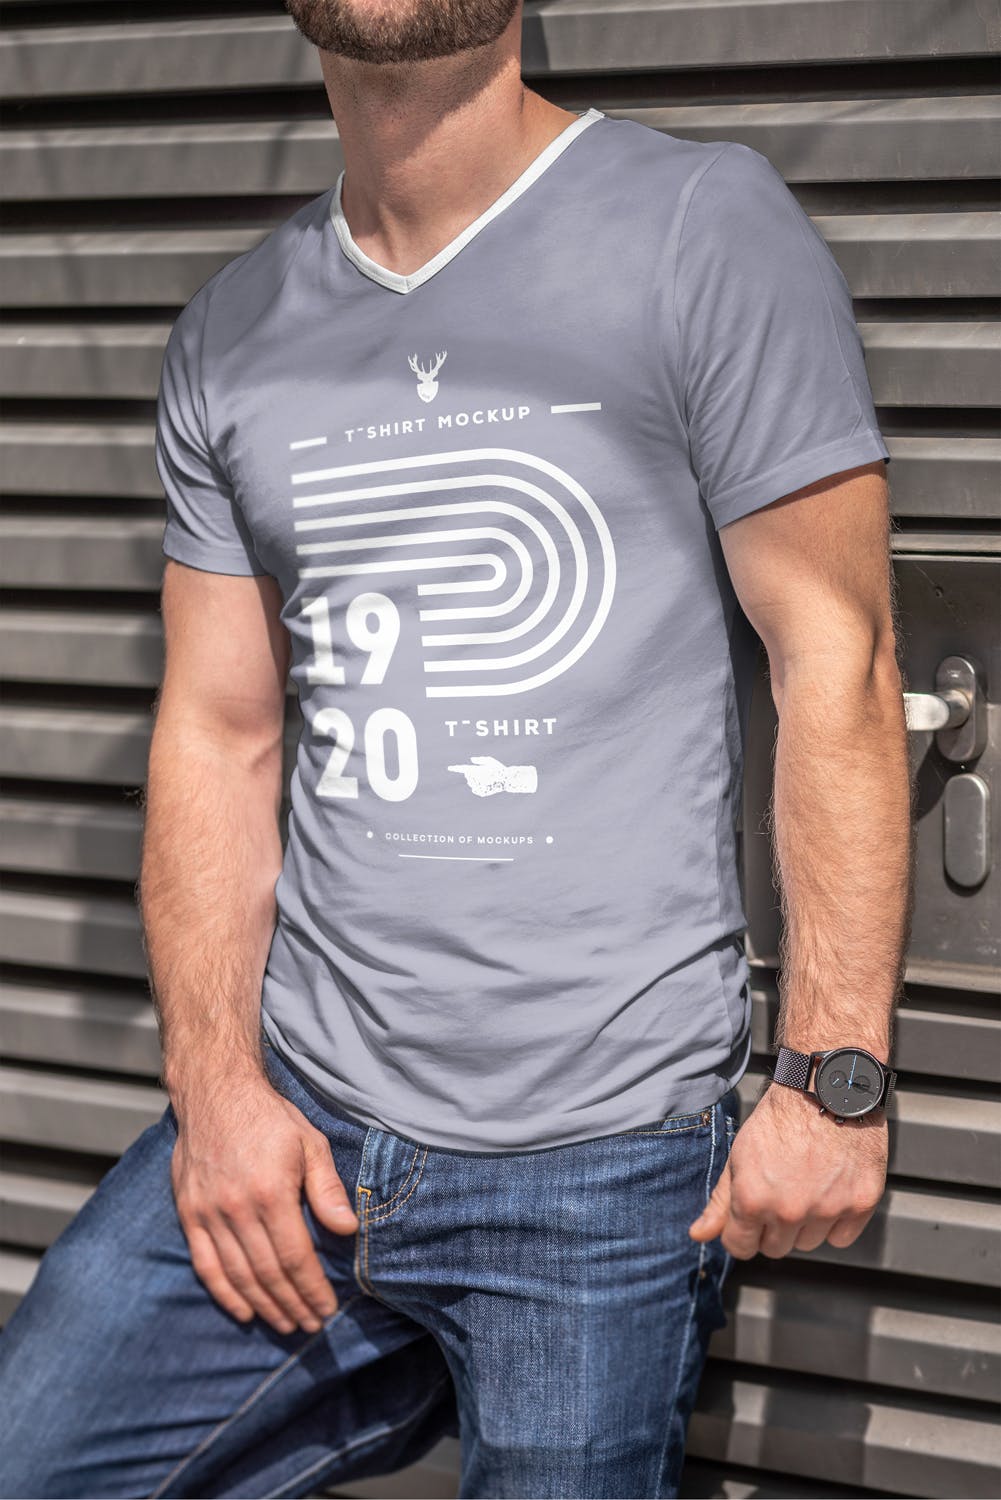 男士印花T恤真实模特上身效果图样机蚂蚁素材精选模板 T-Shirt Mock-up 5插图(7)